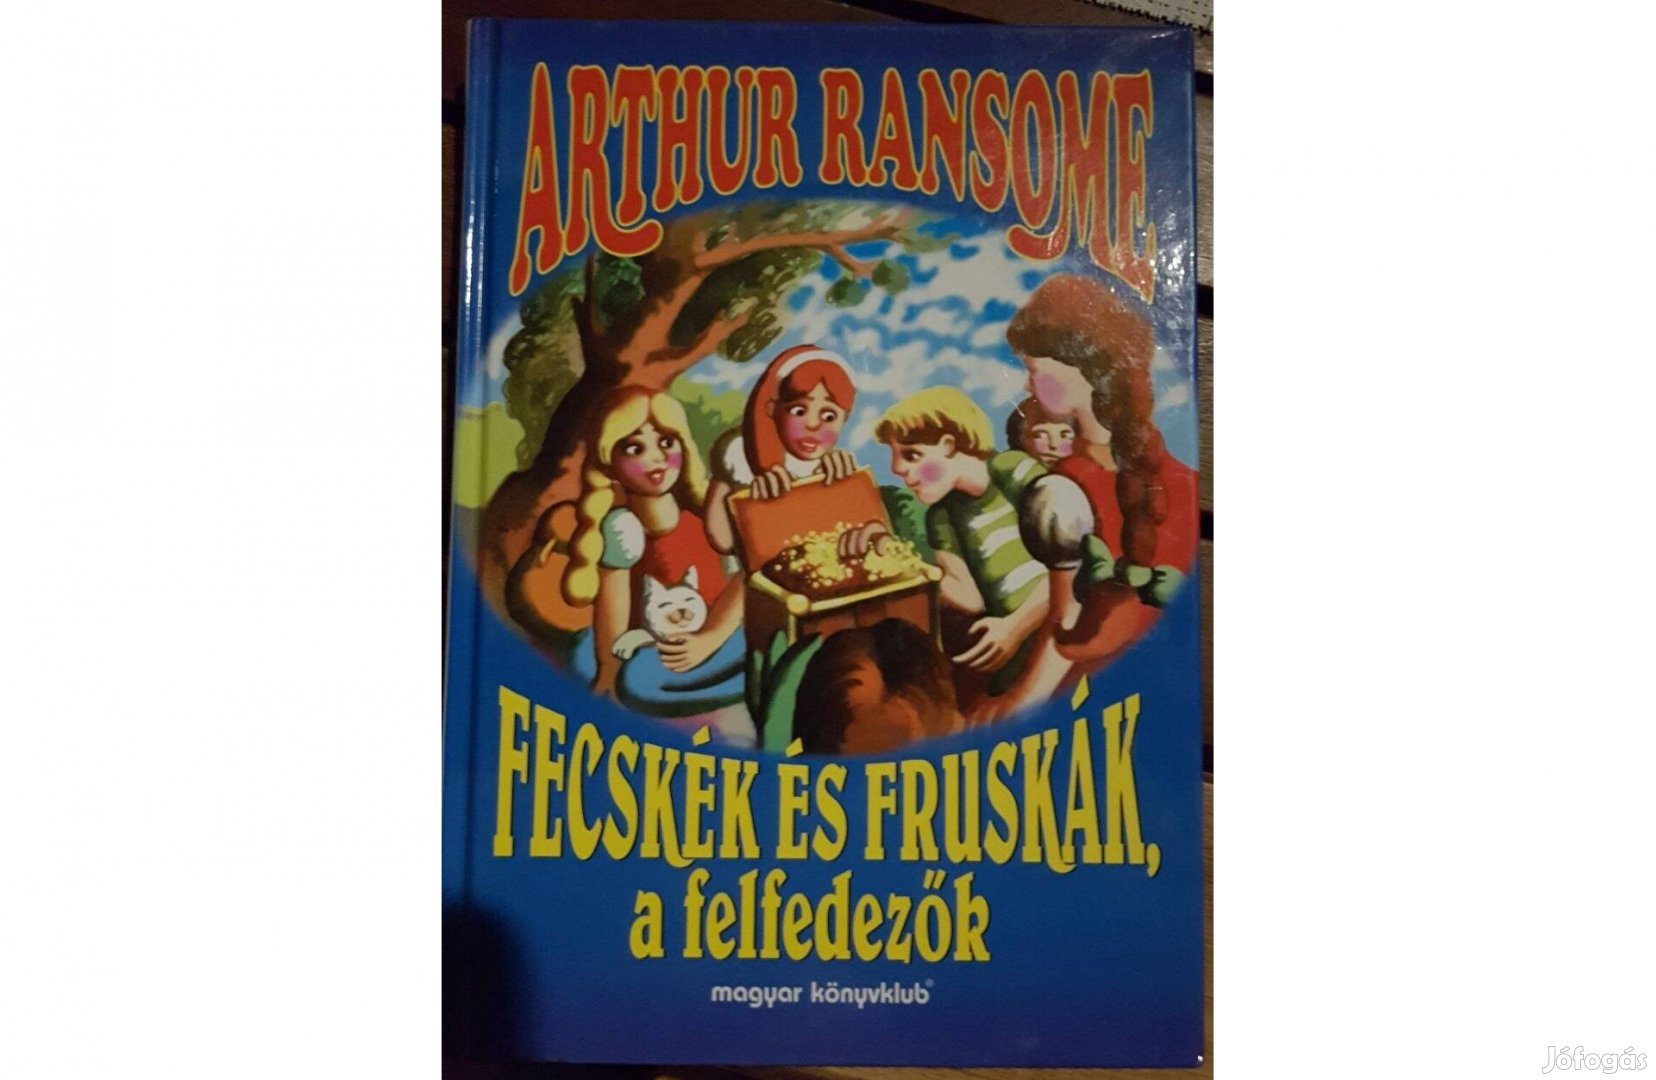 Arthur Ransome-Fecskék és Fruskák, a felfedezők (Fecskék & Fruskák 2)